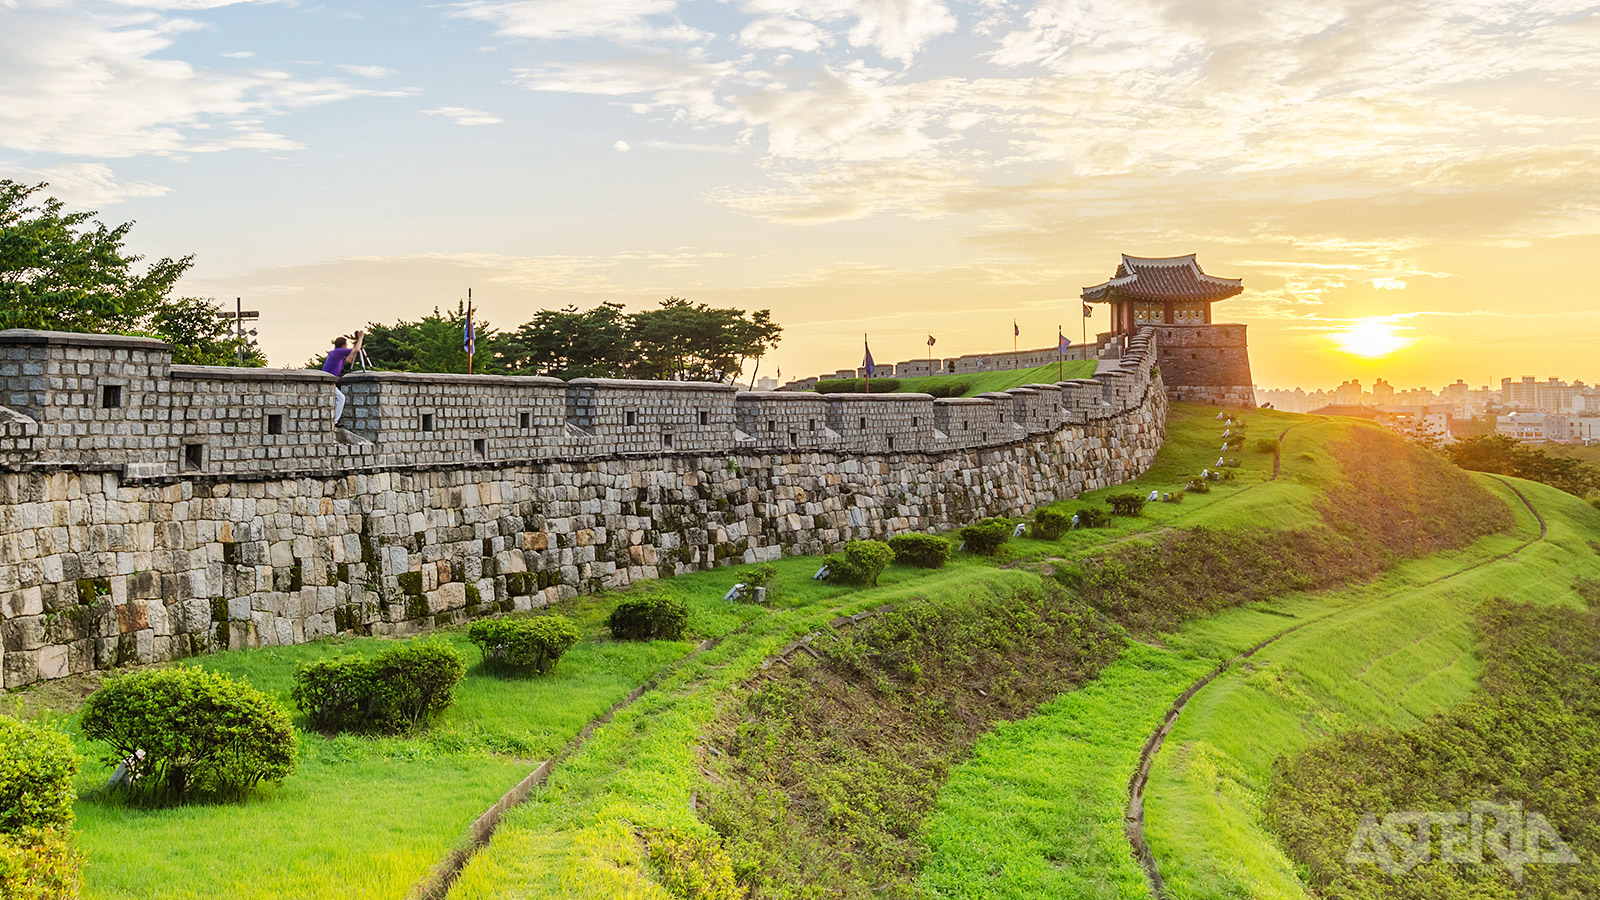 Het indrukwekkende Hwaseong fort met zijn 6 km vestingmuren, 4 poorten, verschillende bastions en diverse torens